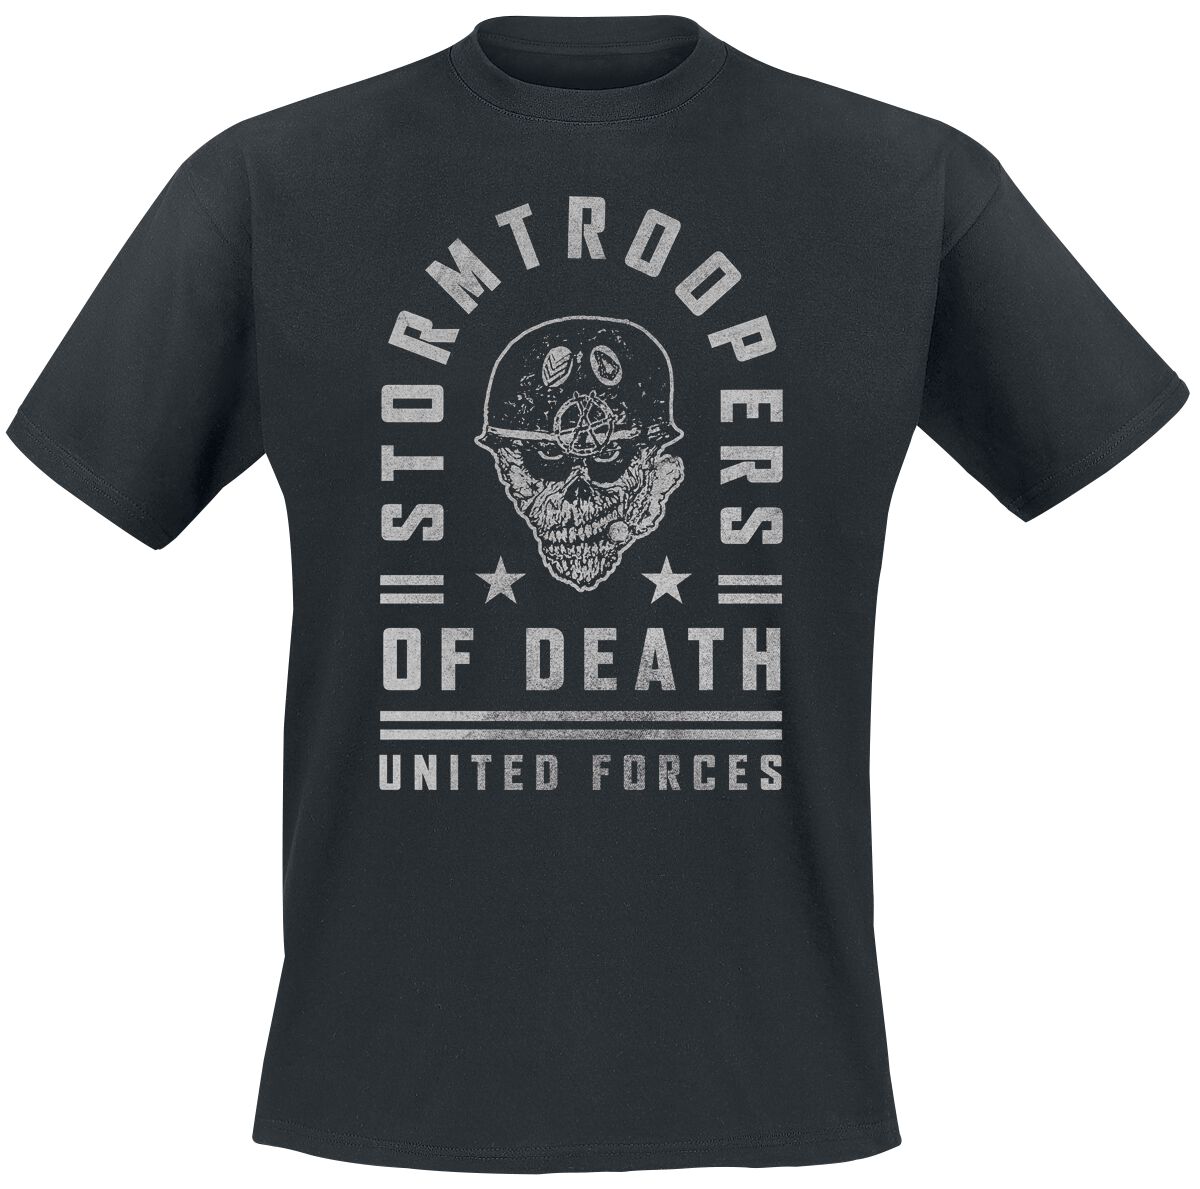 Stormtroopers Of Death T-Shirt - United Forces - S - für Männer - Größe S - schwarz  - Lizenziertes Merchandise!